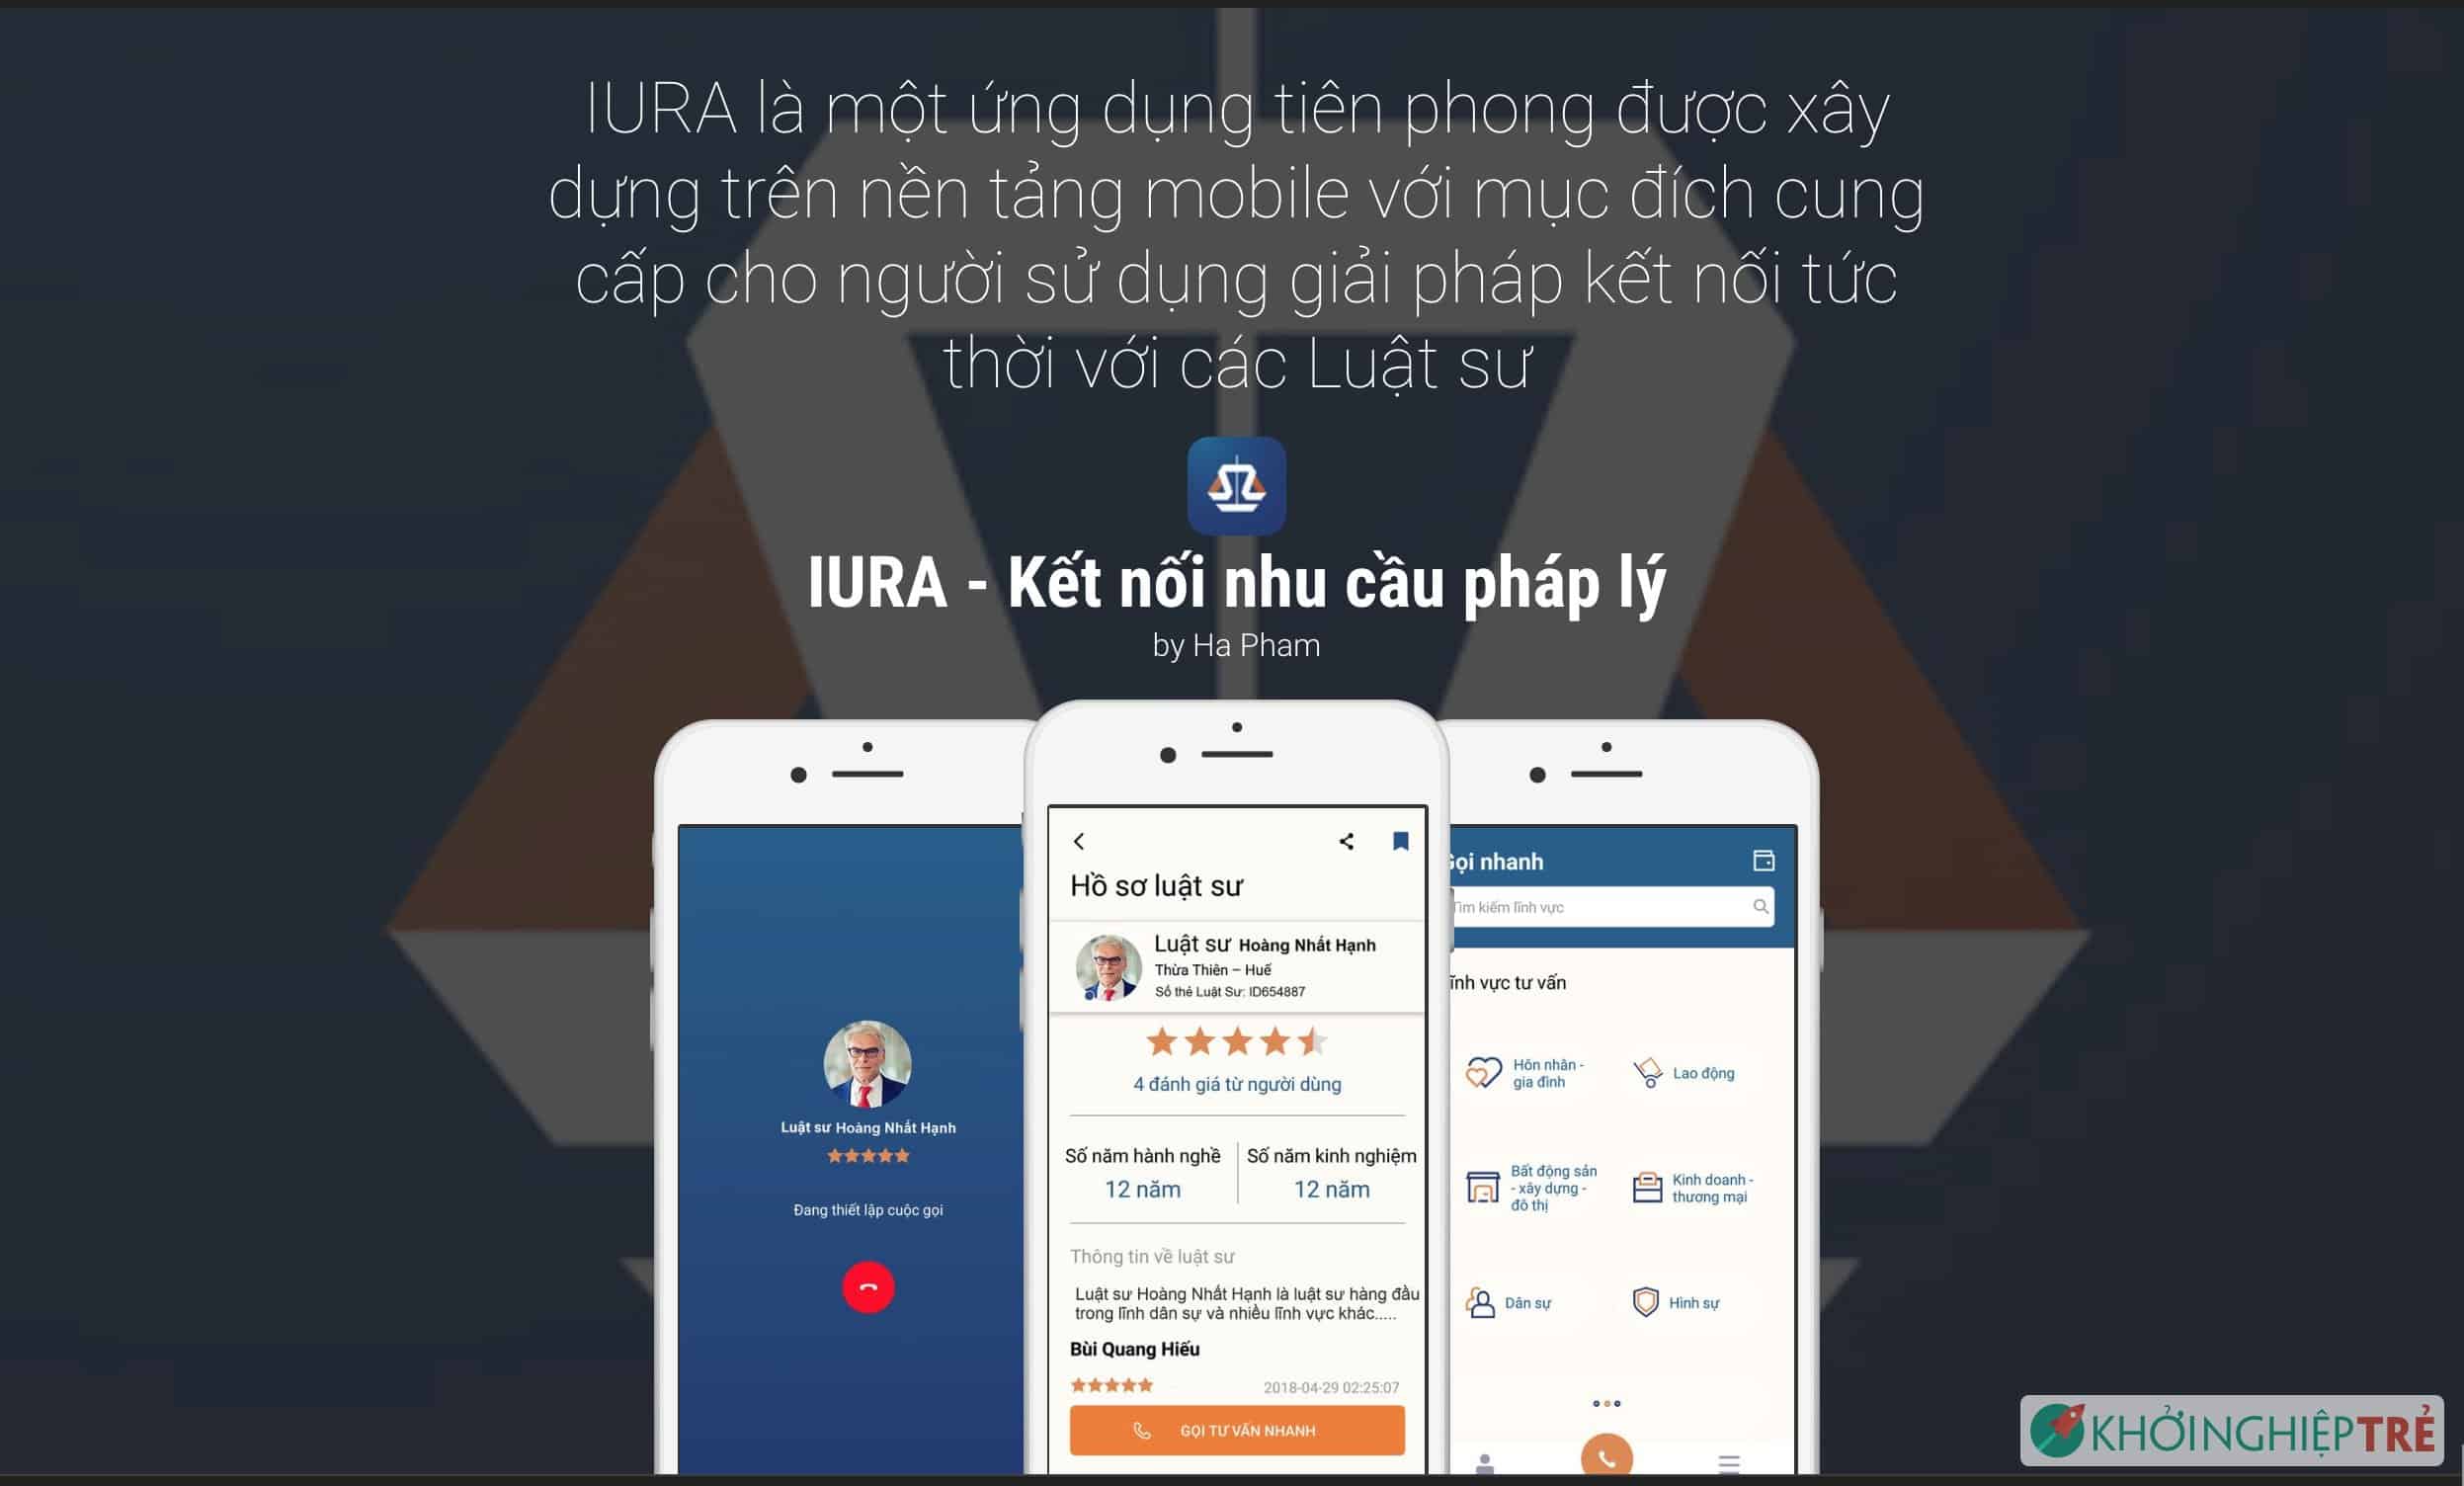 IURA - Kết nối nhu cầu pháp lý là một ứng dụng tiên phong được xây dựng trên nền tảng mobile với mục đích cung cấp cho người sử dụng giải pháp kết nối tức thời với các Luật sư